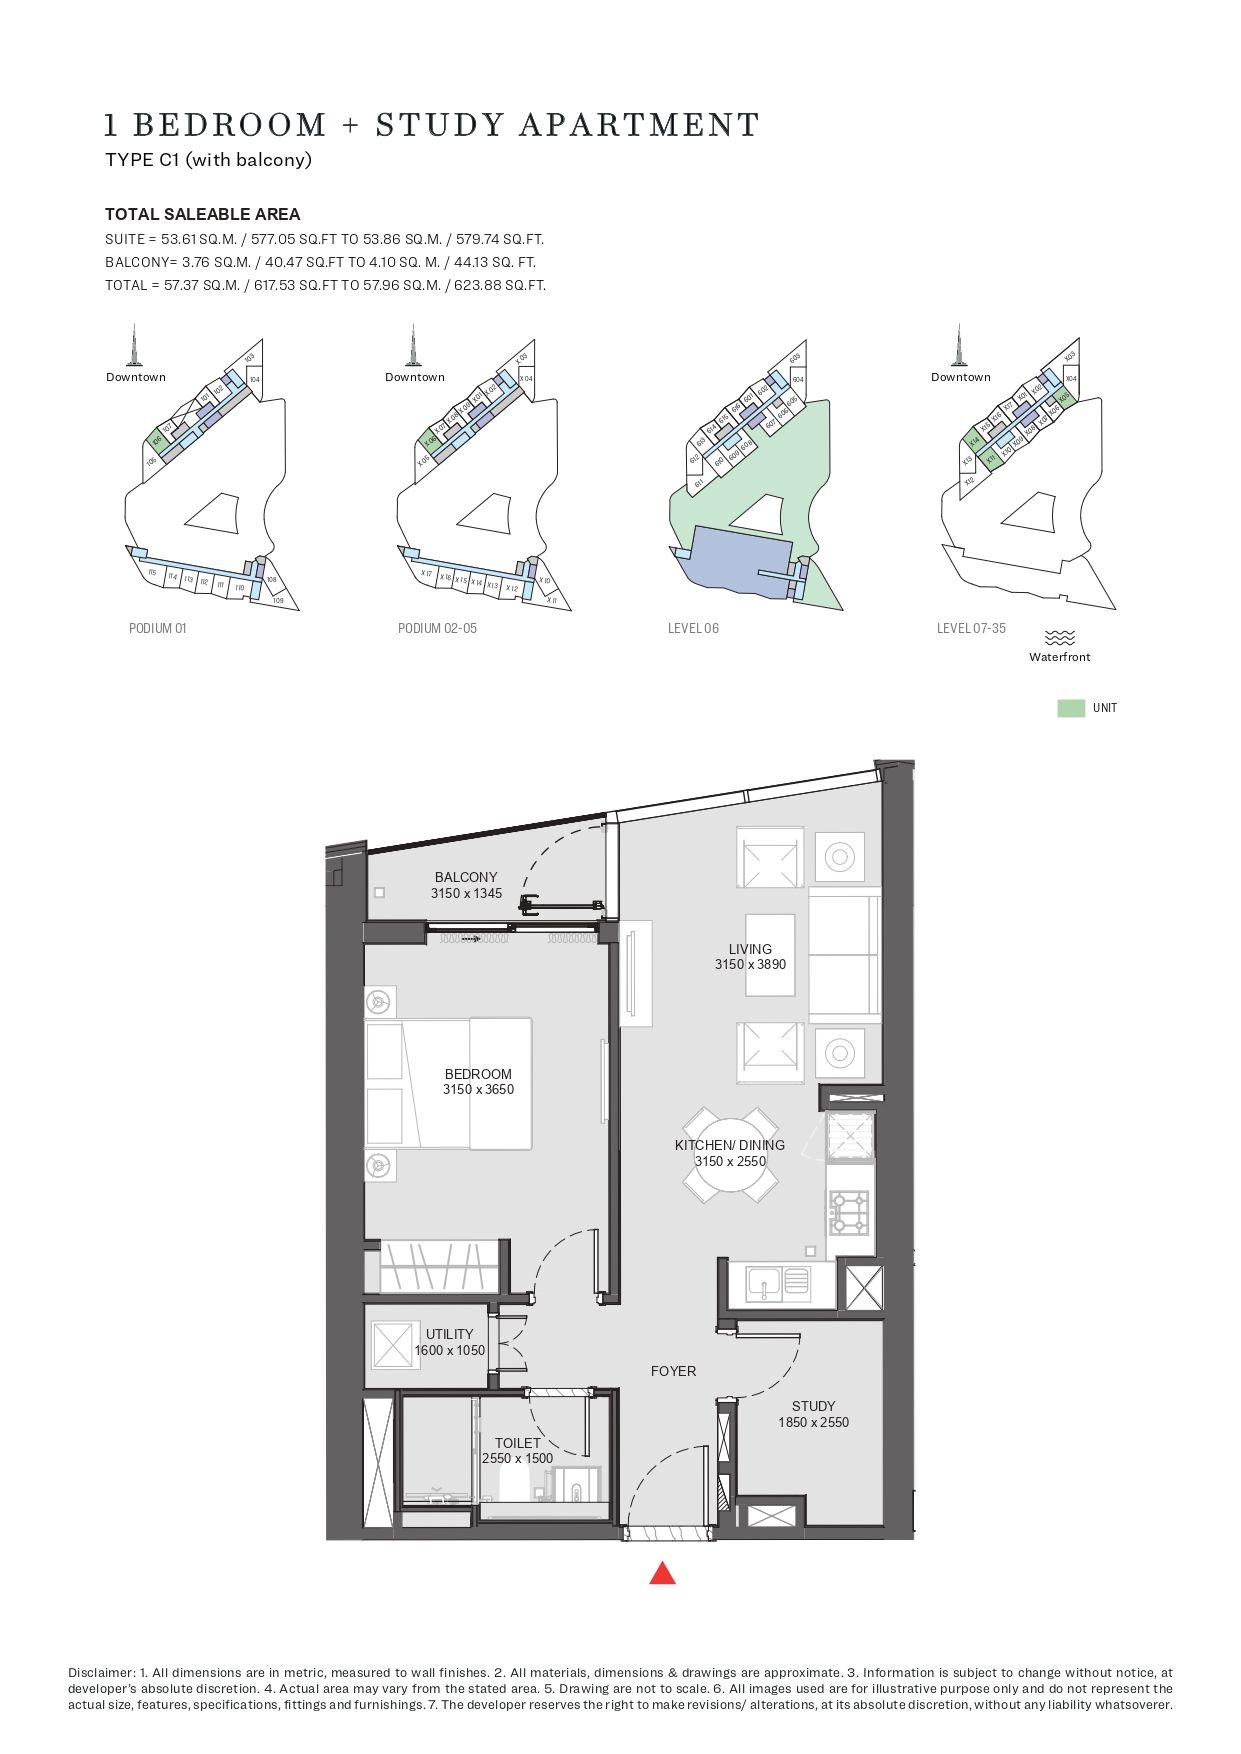 1 Bedroom + Study Apartment Type C1